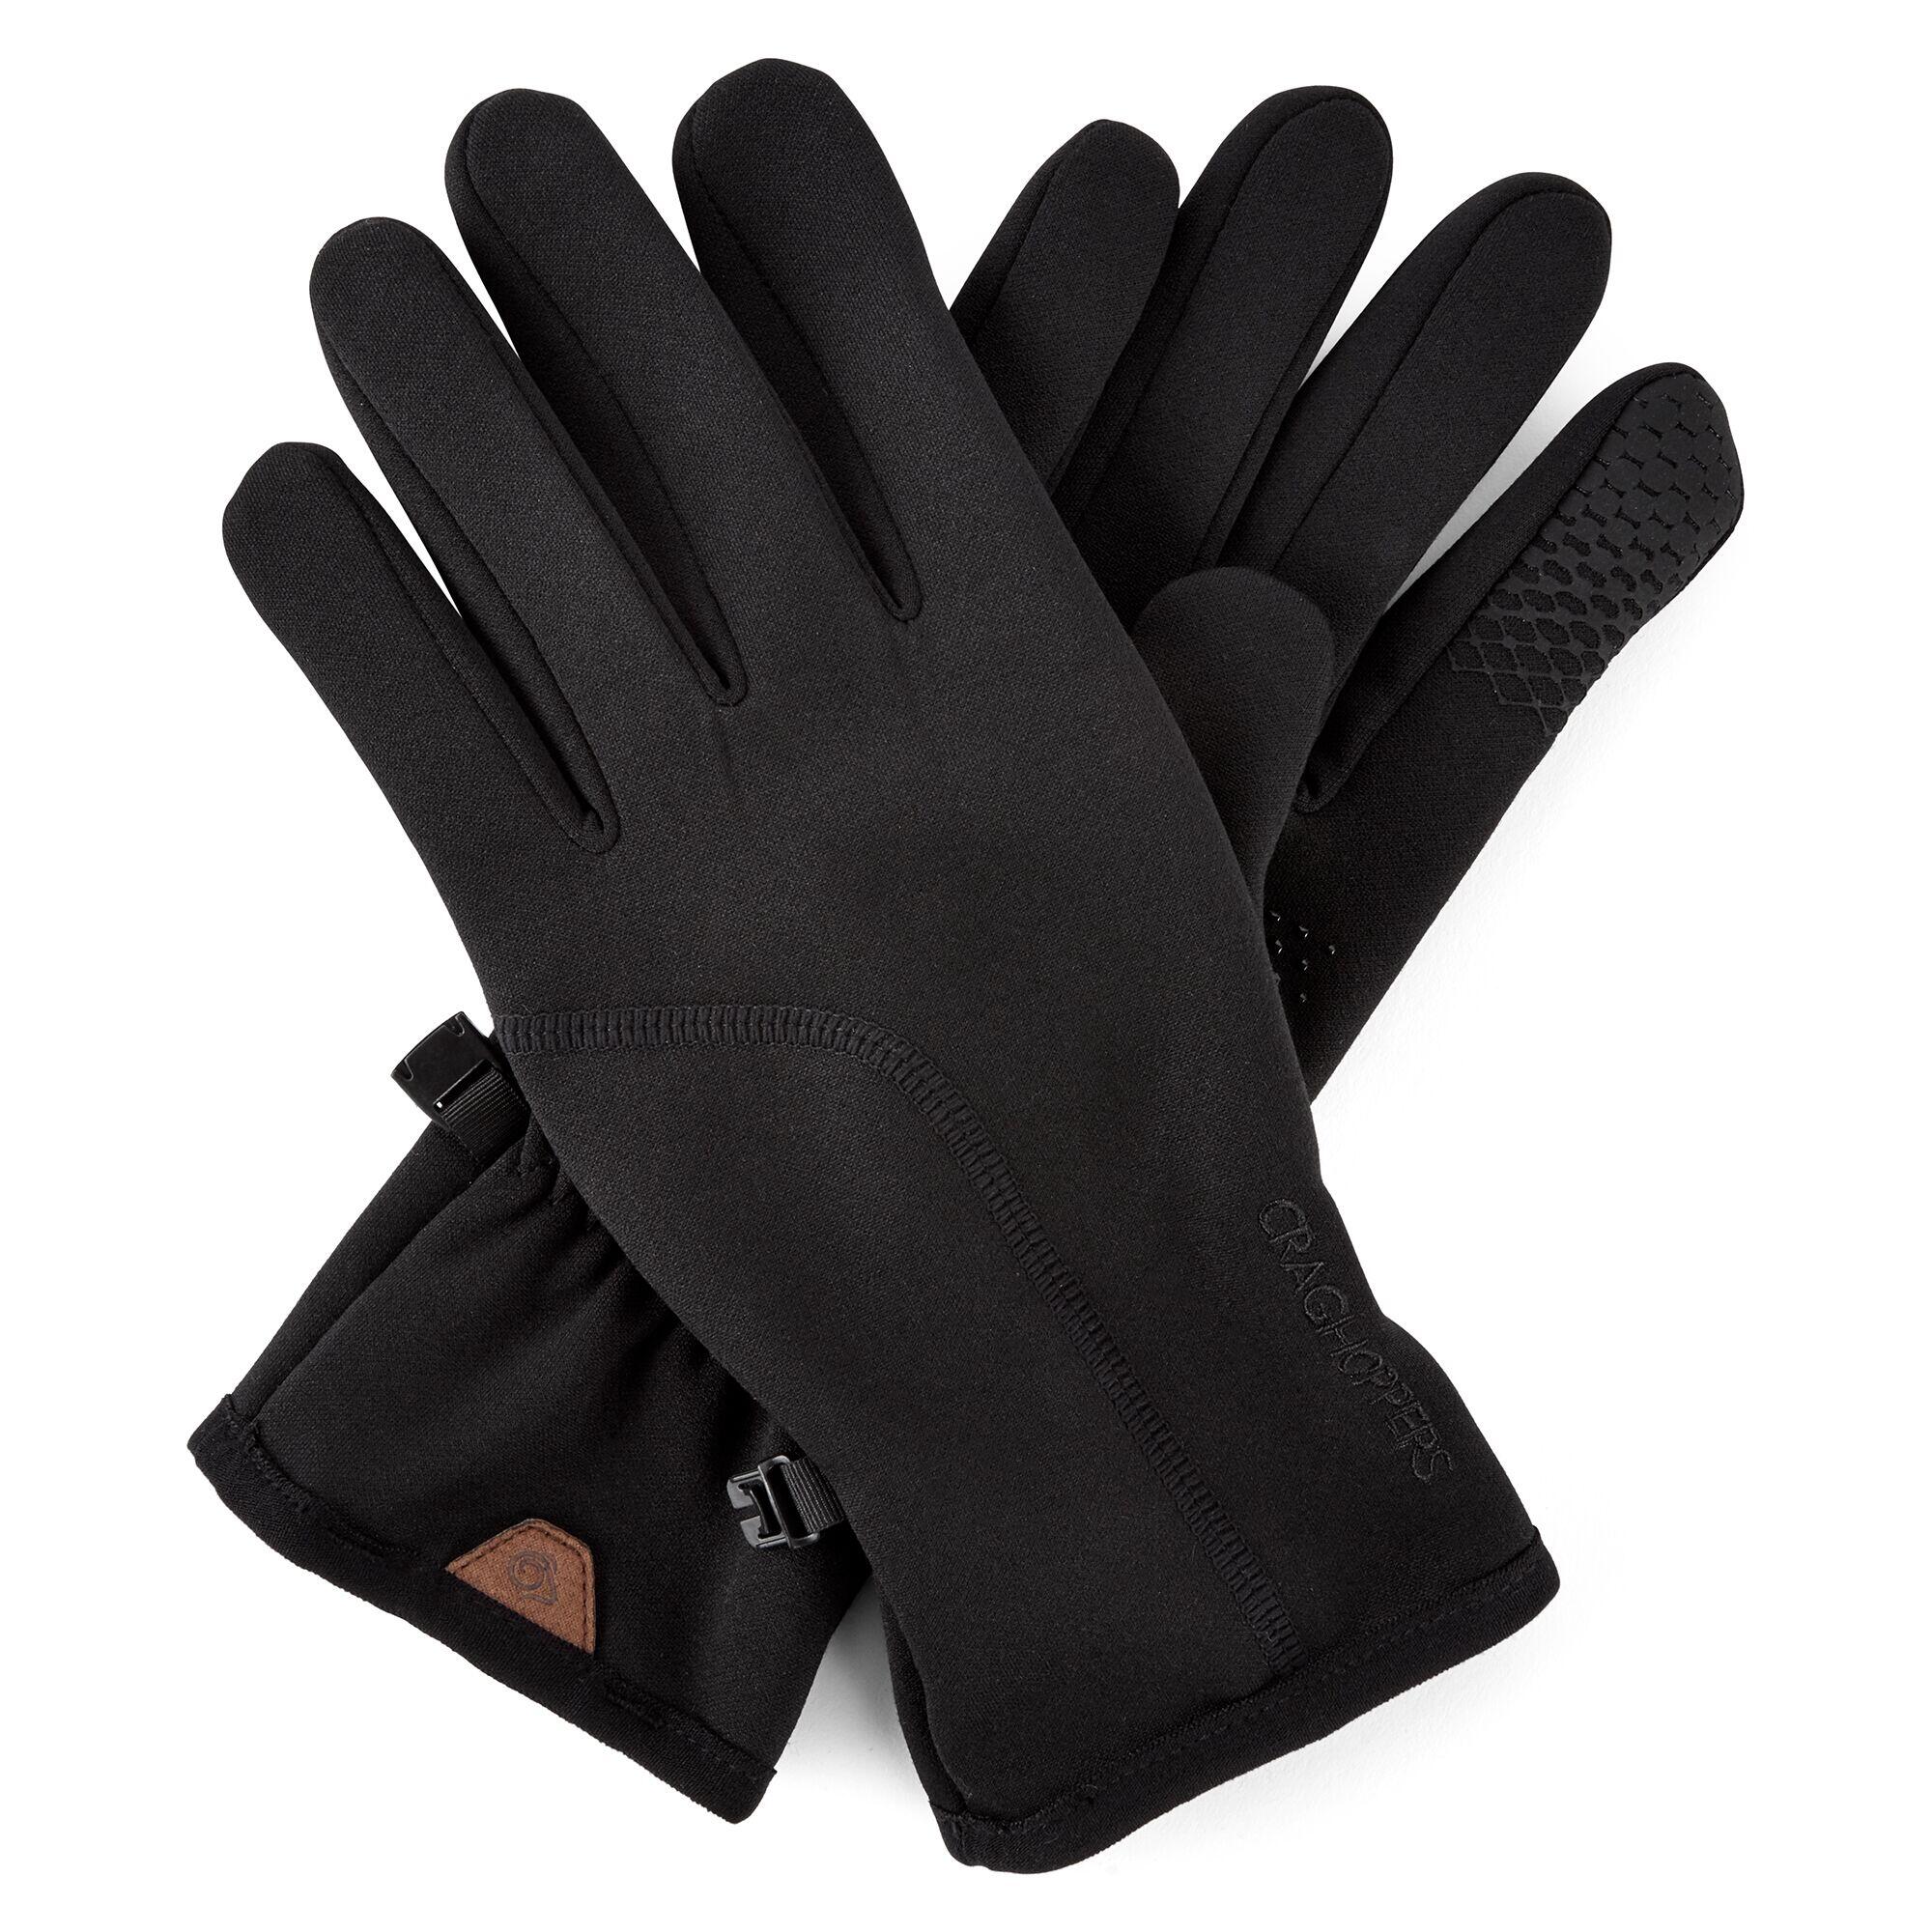 CRAGHOPPERS Prostretch Glove